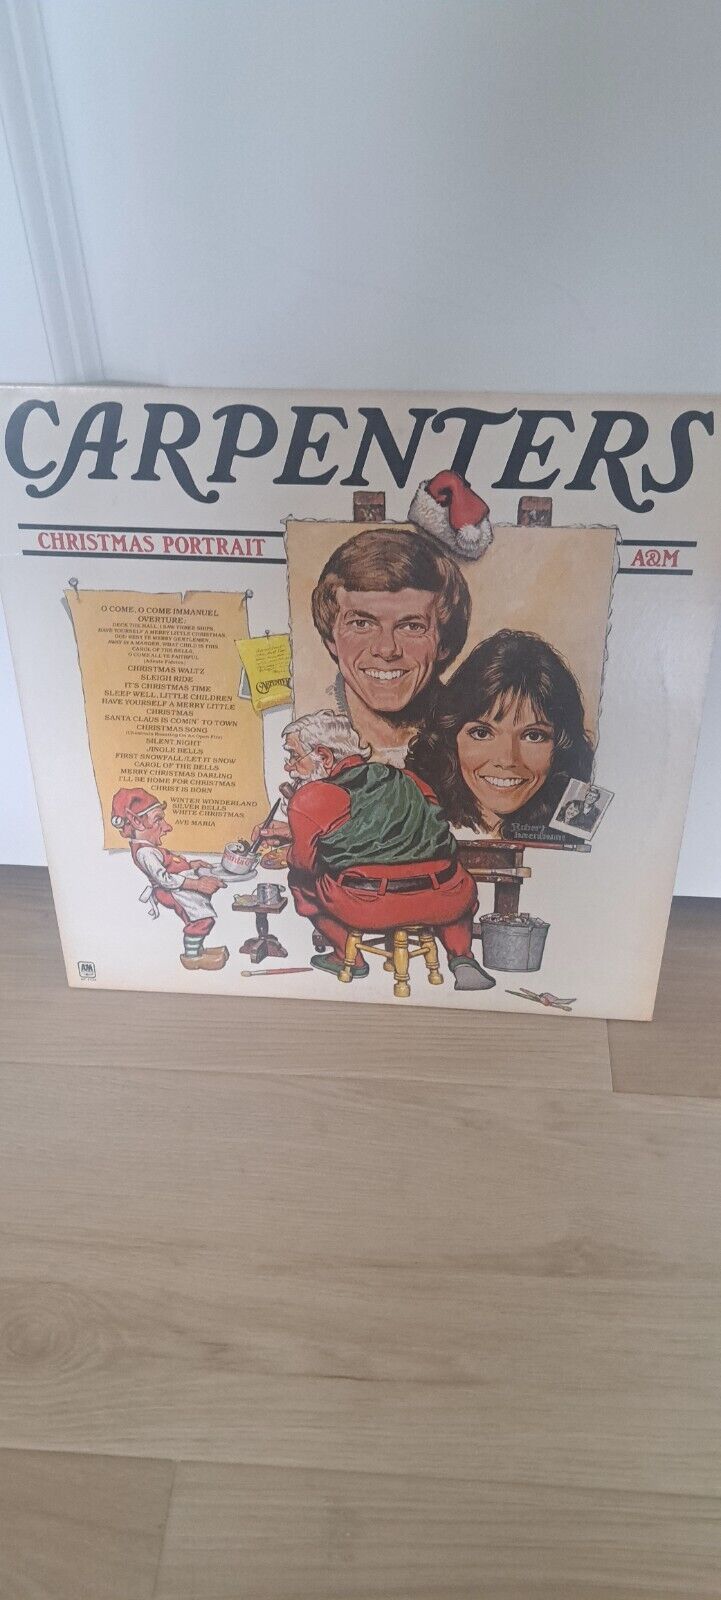 Carpenters Christmas Portrait 1978 A&M Records SP-4726 Vinyl Record